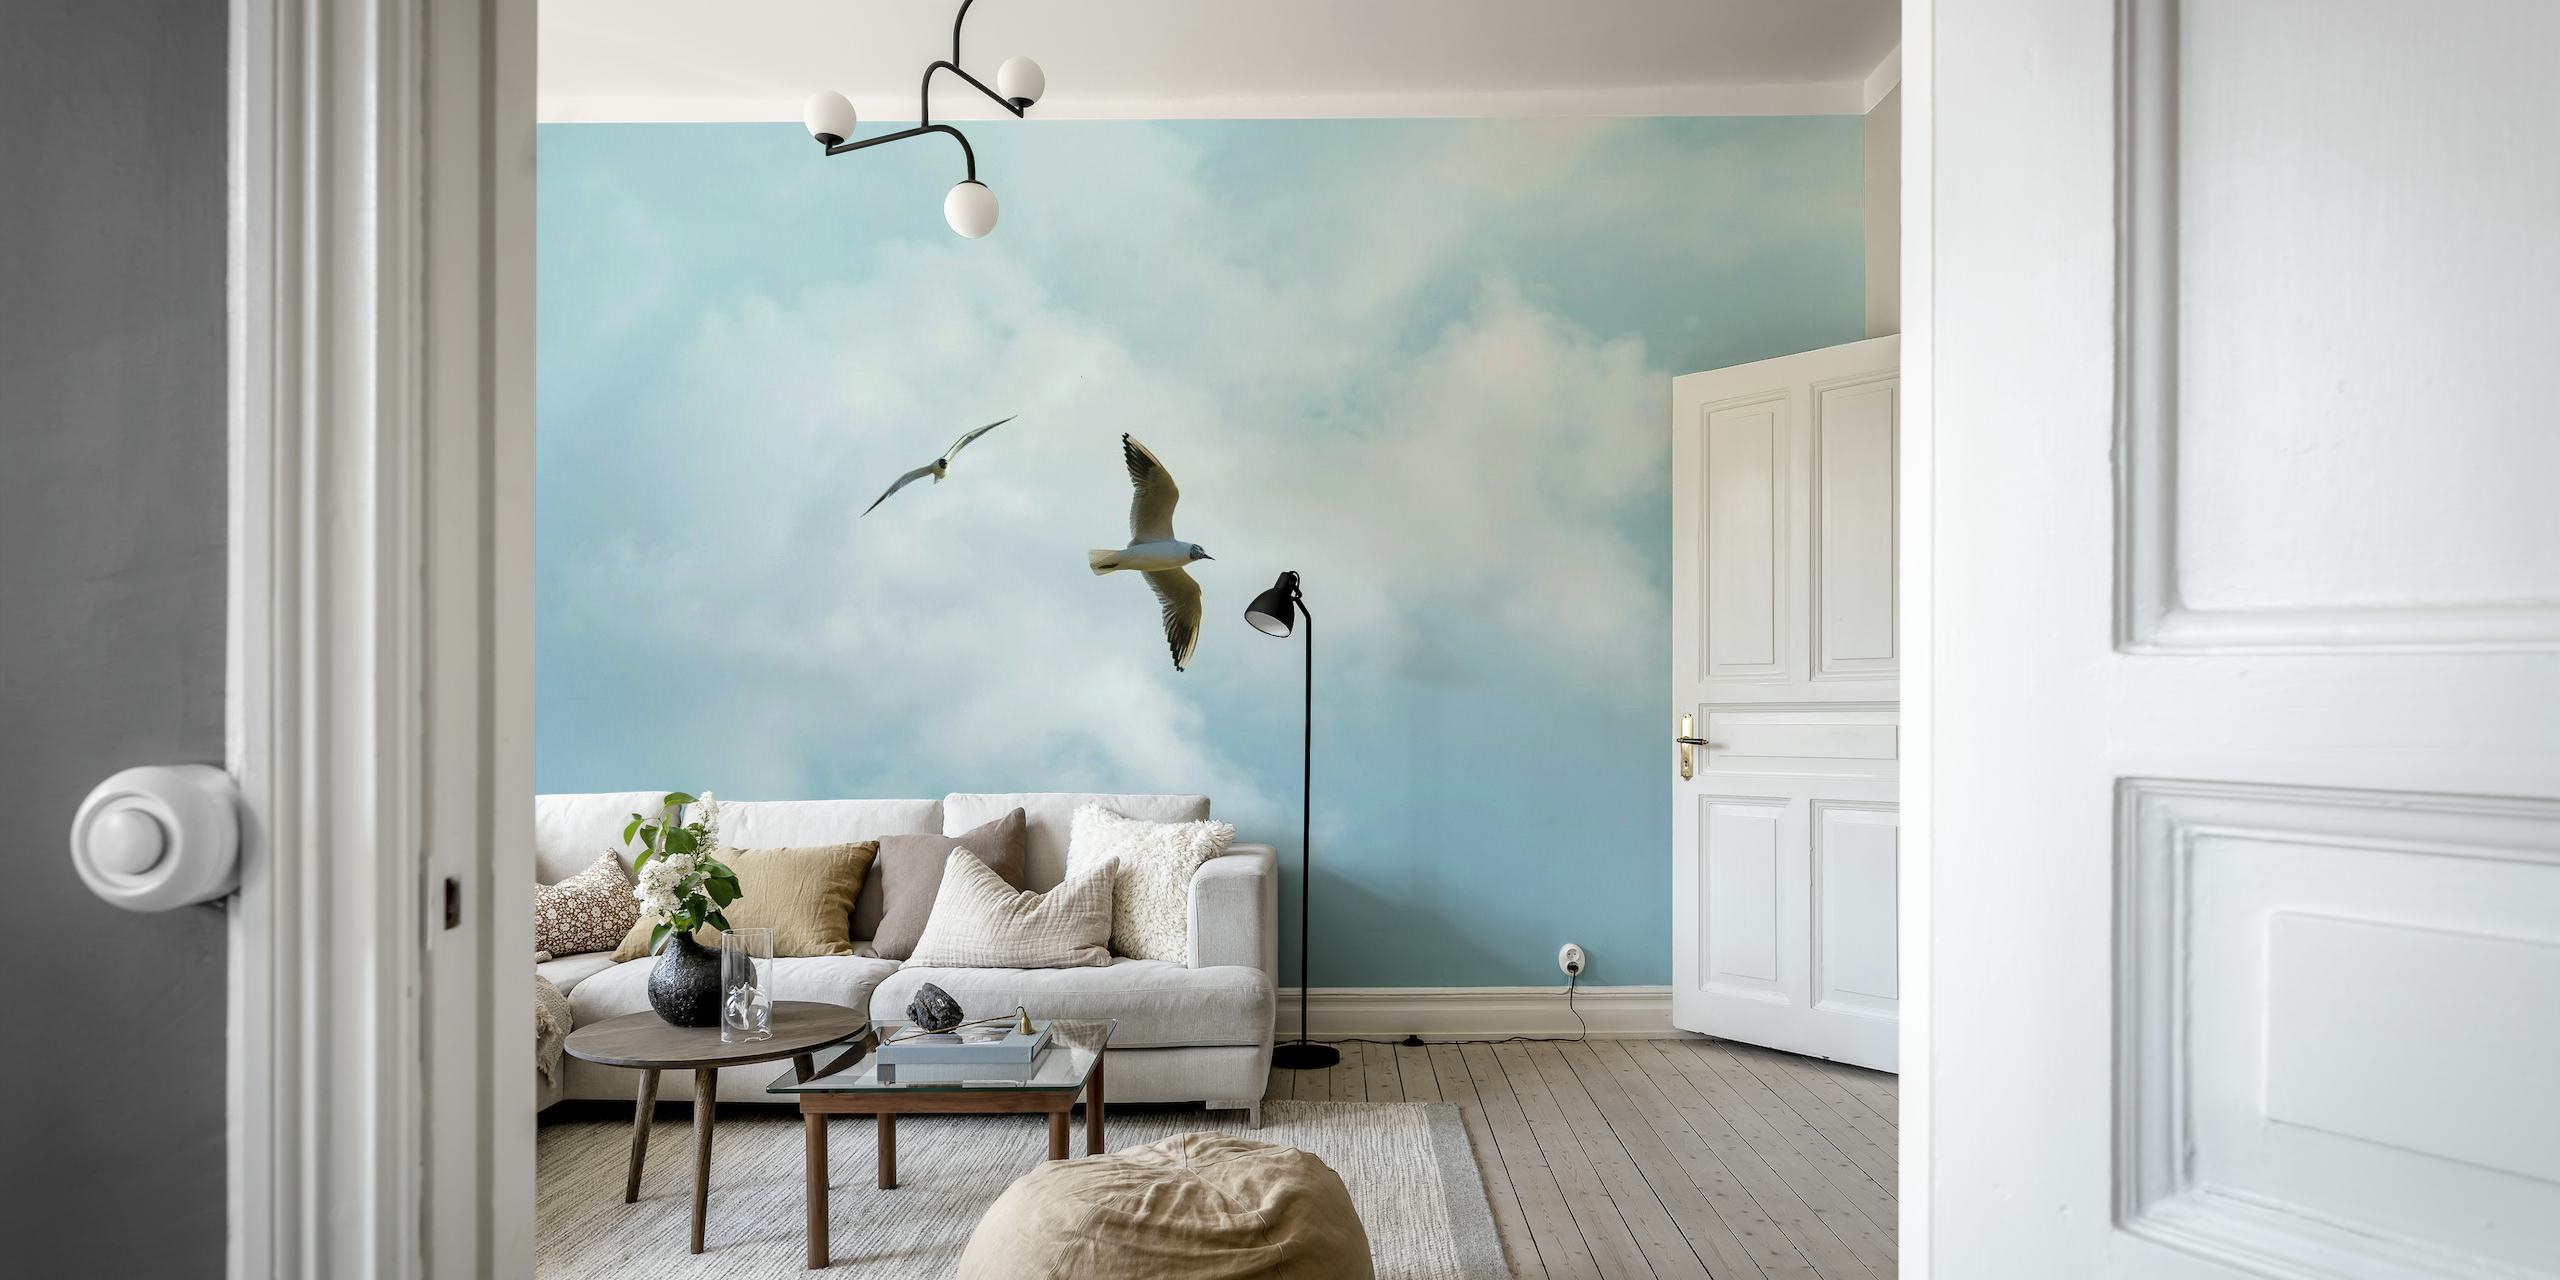 Papier peint mural de deux oiseaux marins volant dans un ciel paisible avec des nuages duveteux